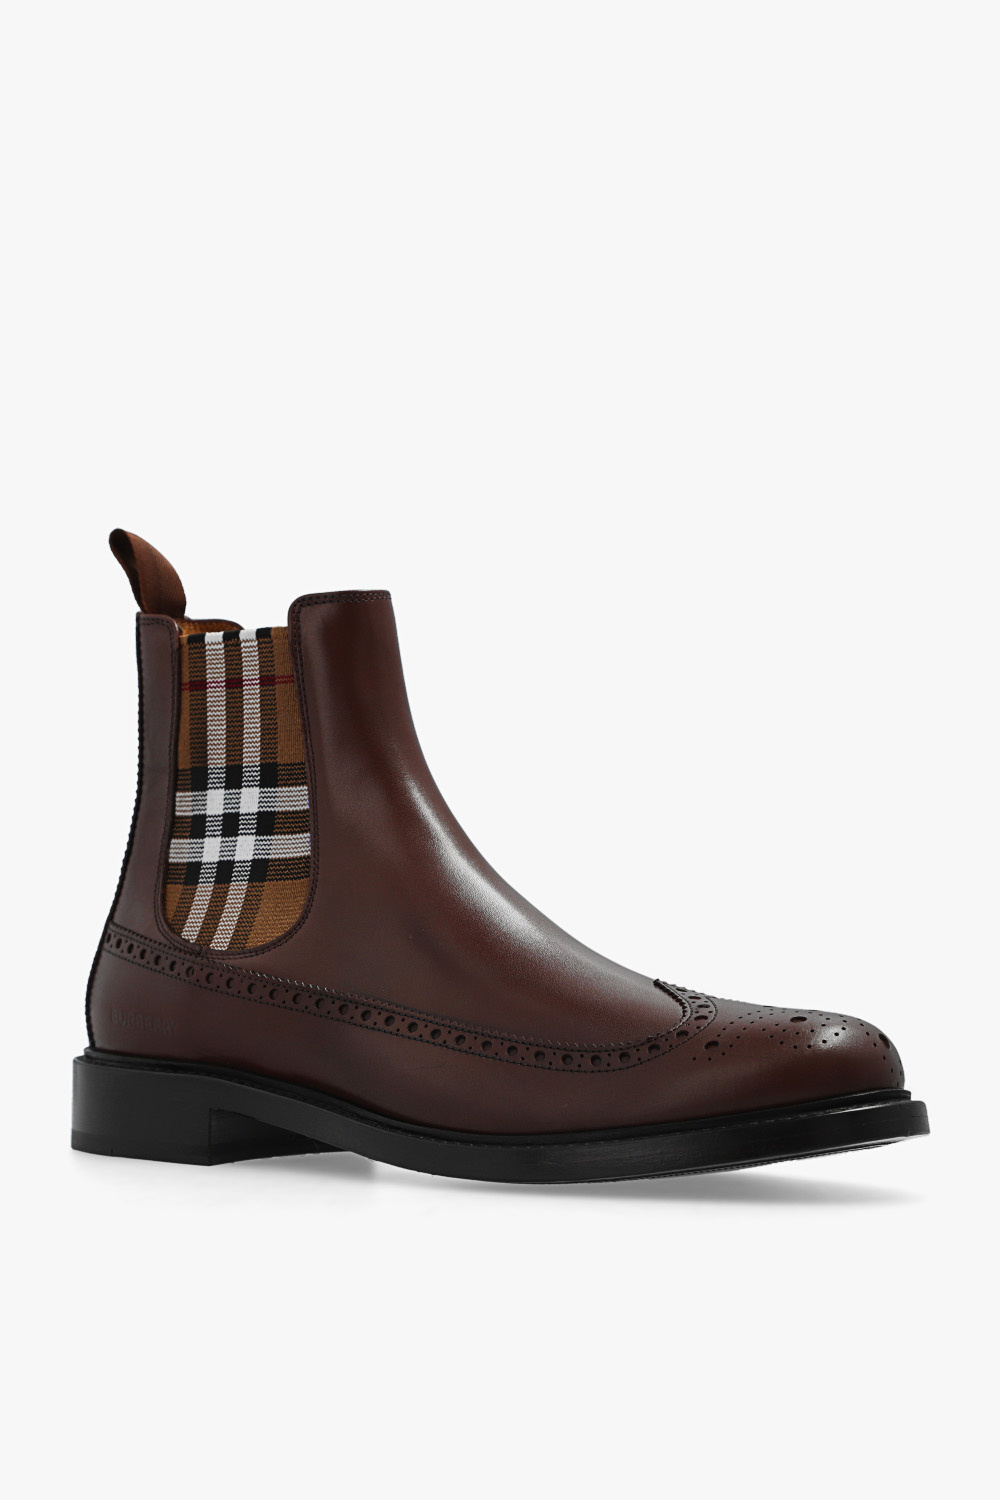 burberry Hemd ‘Tanner’ Chelsea boots